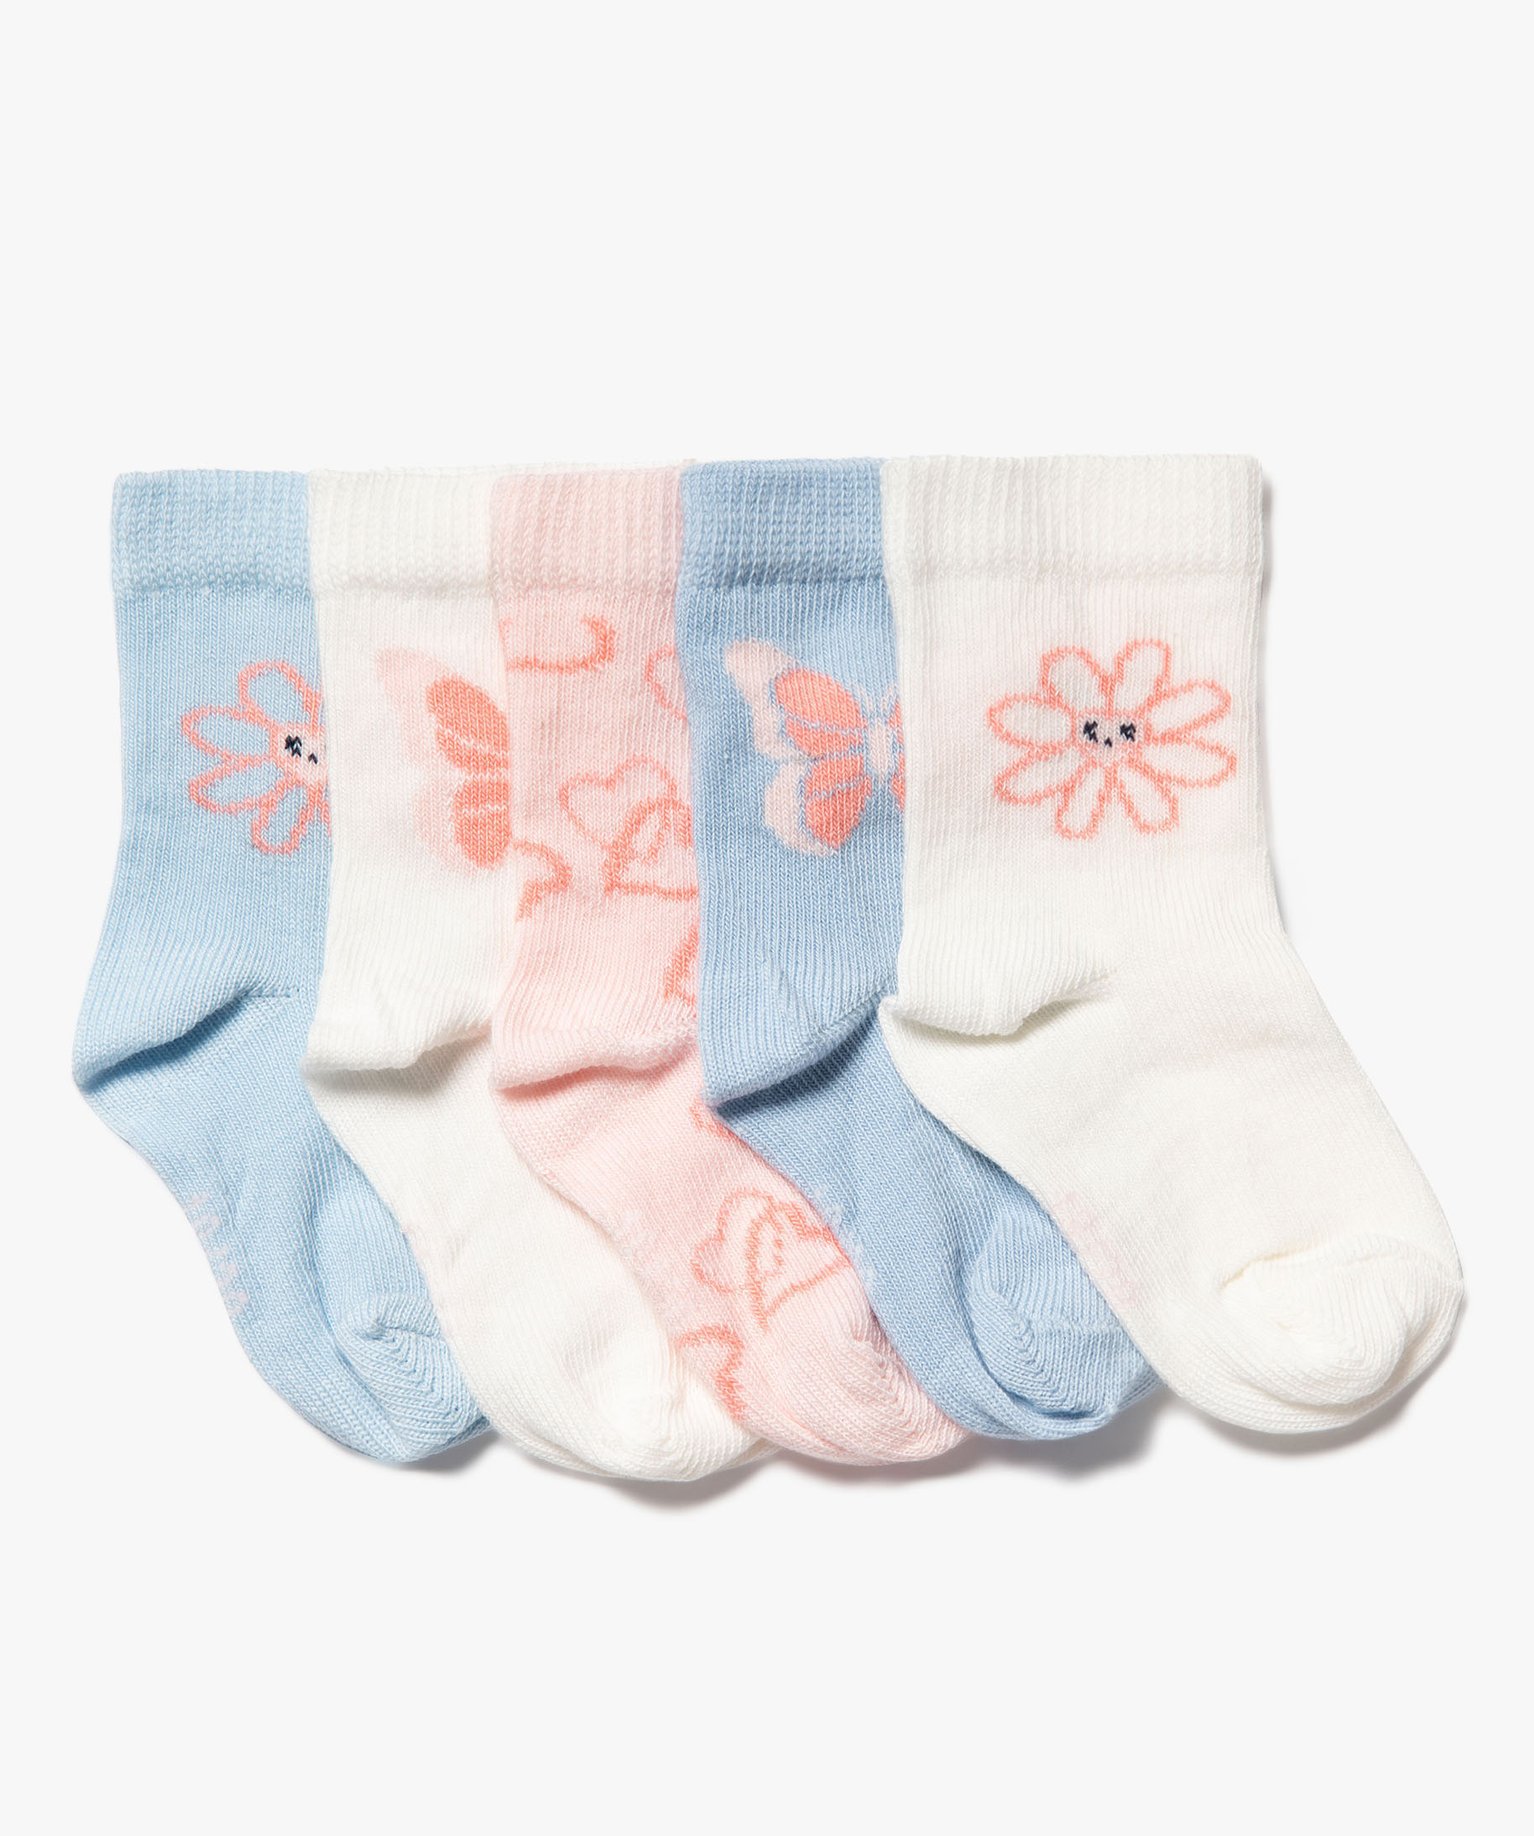 Chaussettes à motifs papillons et fleurs bébé fille (lot de 5) - 15/17 - bleu standard - GEMO